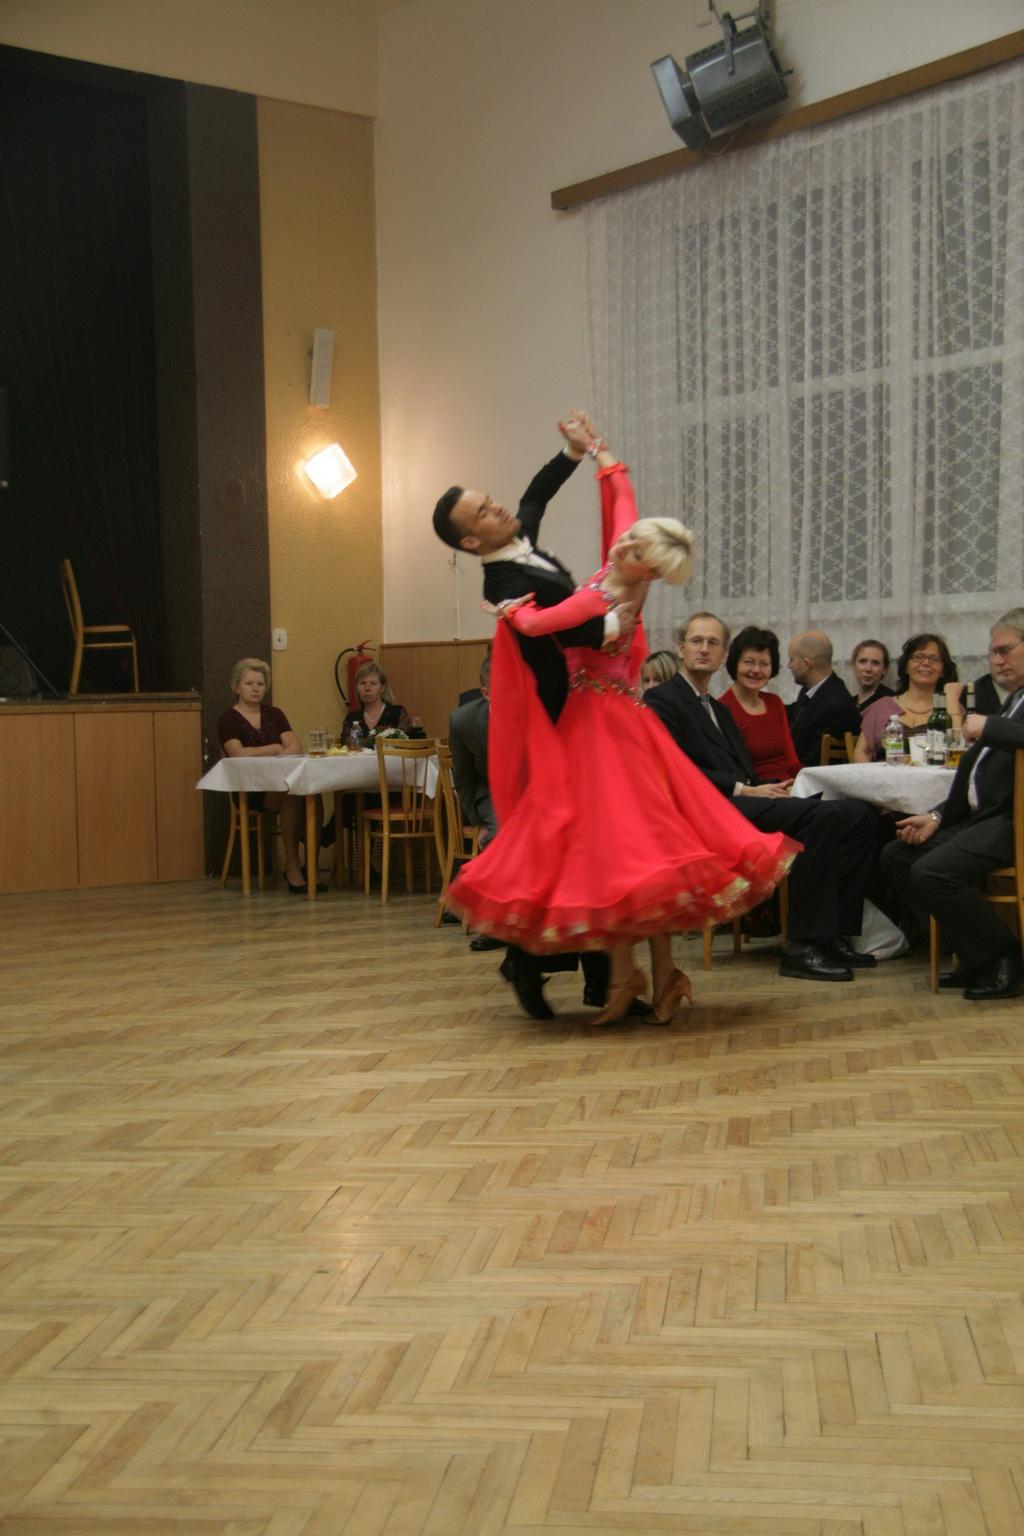 Sousedský ples podpořila MČ Brno - Maloměřice a Obřany a rovněž soukromí